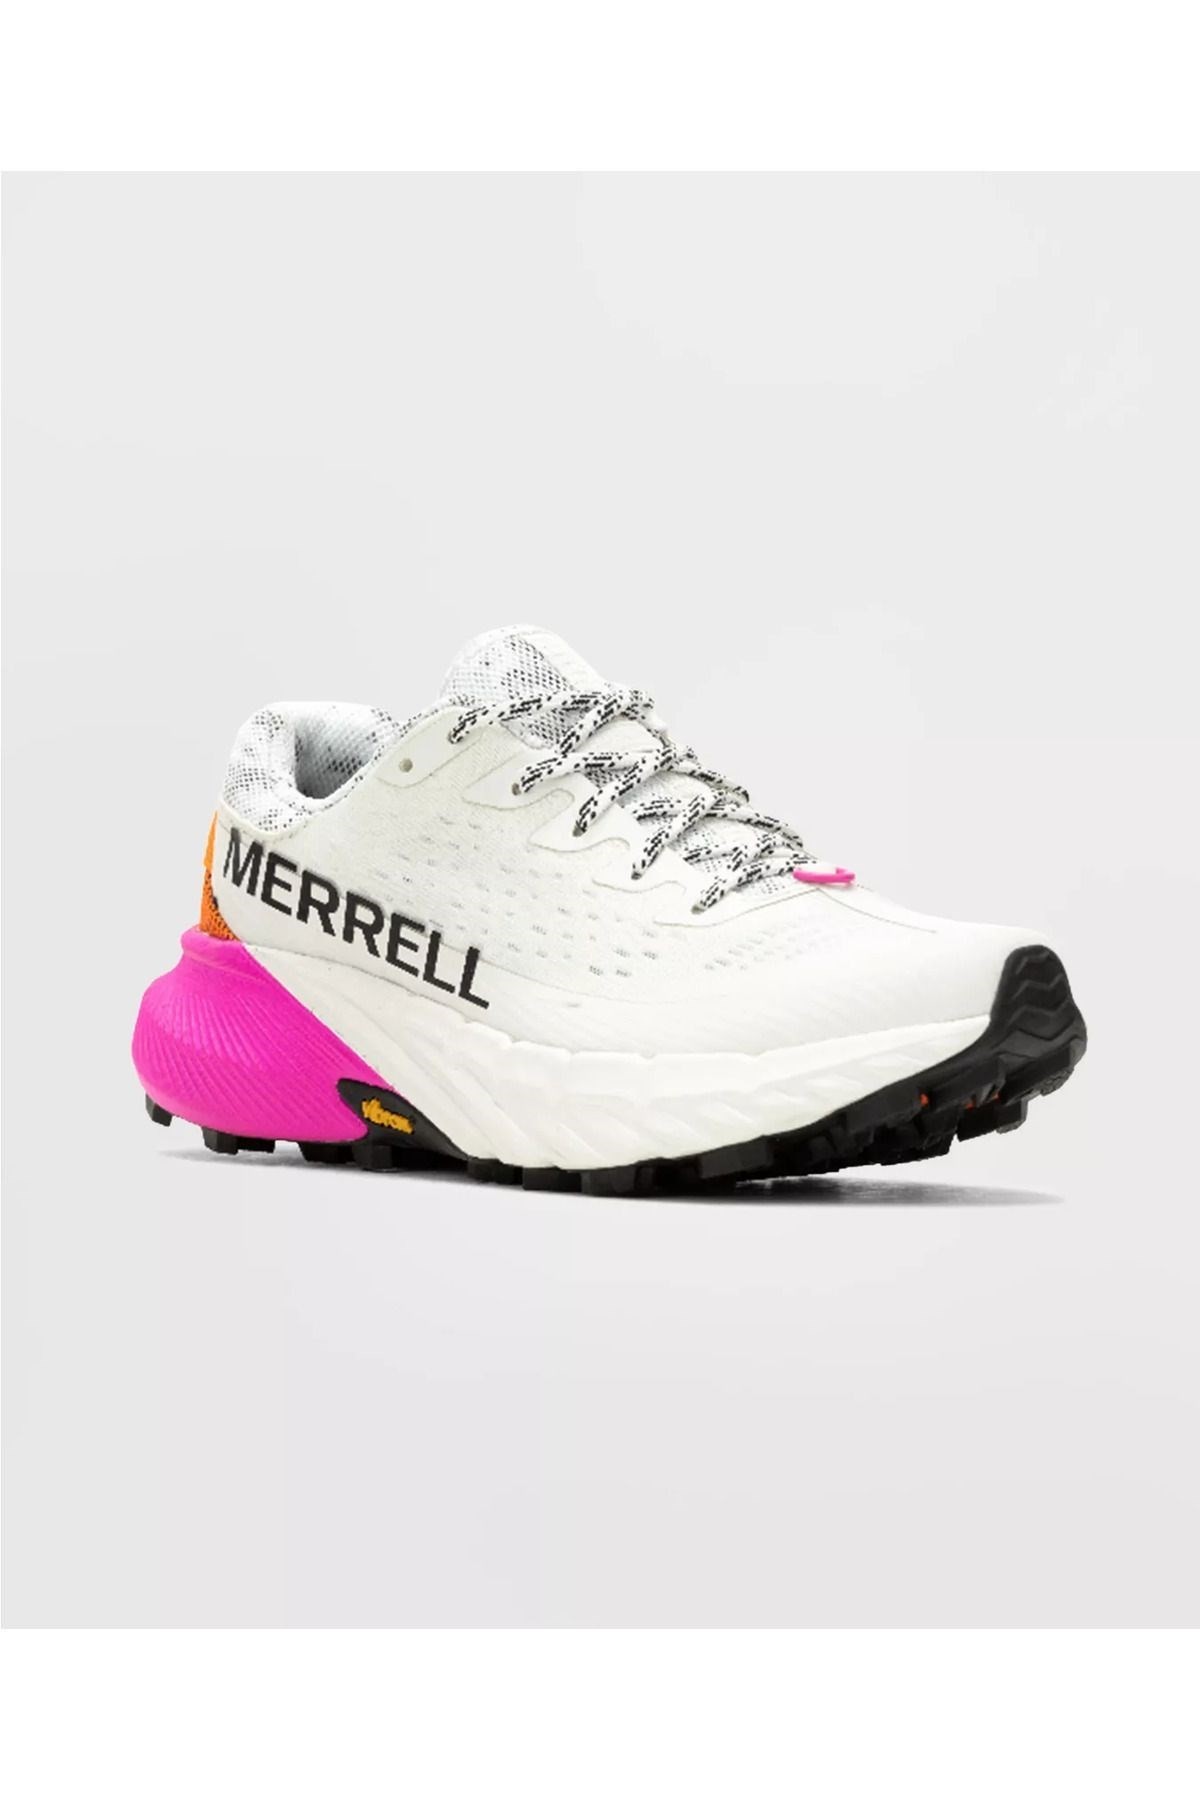 Merrell Kadın Agılıty Peak 5 Patika Koşusu Ayakkabısı Whıte/multı J068234